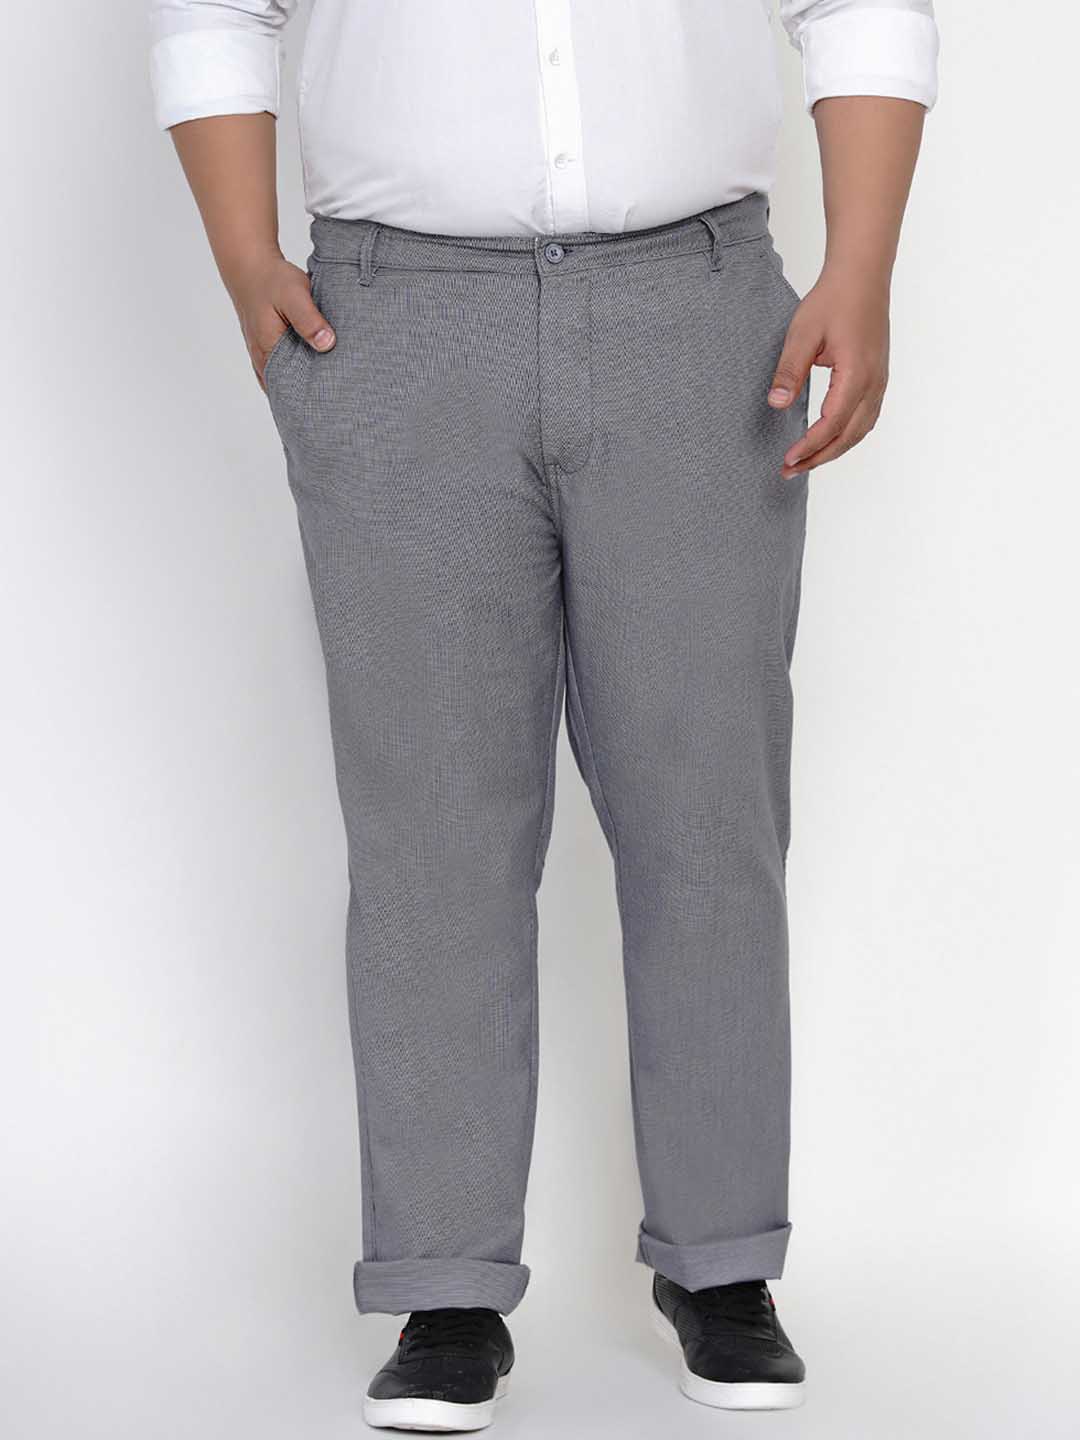 John Pride Grey Trouser